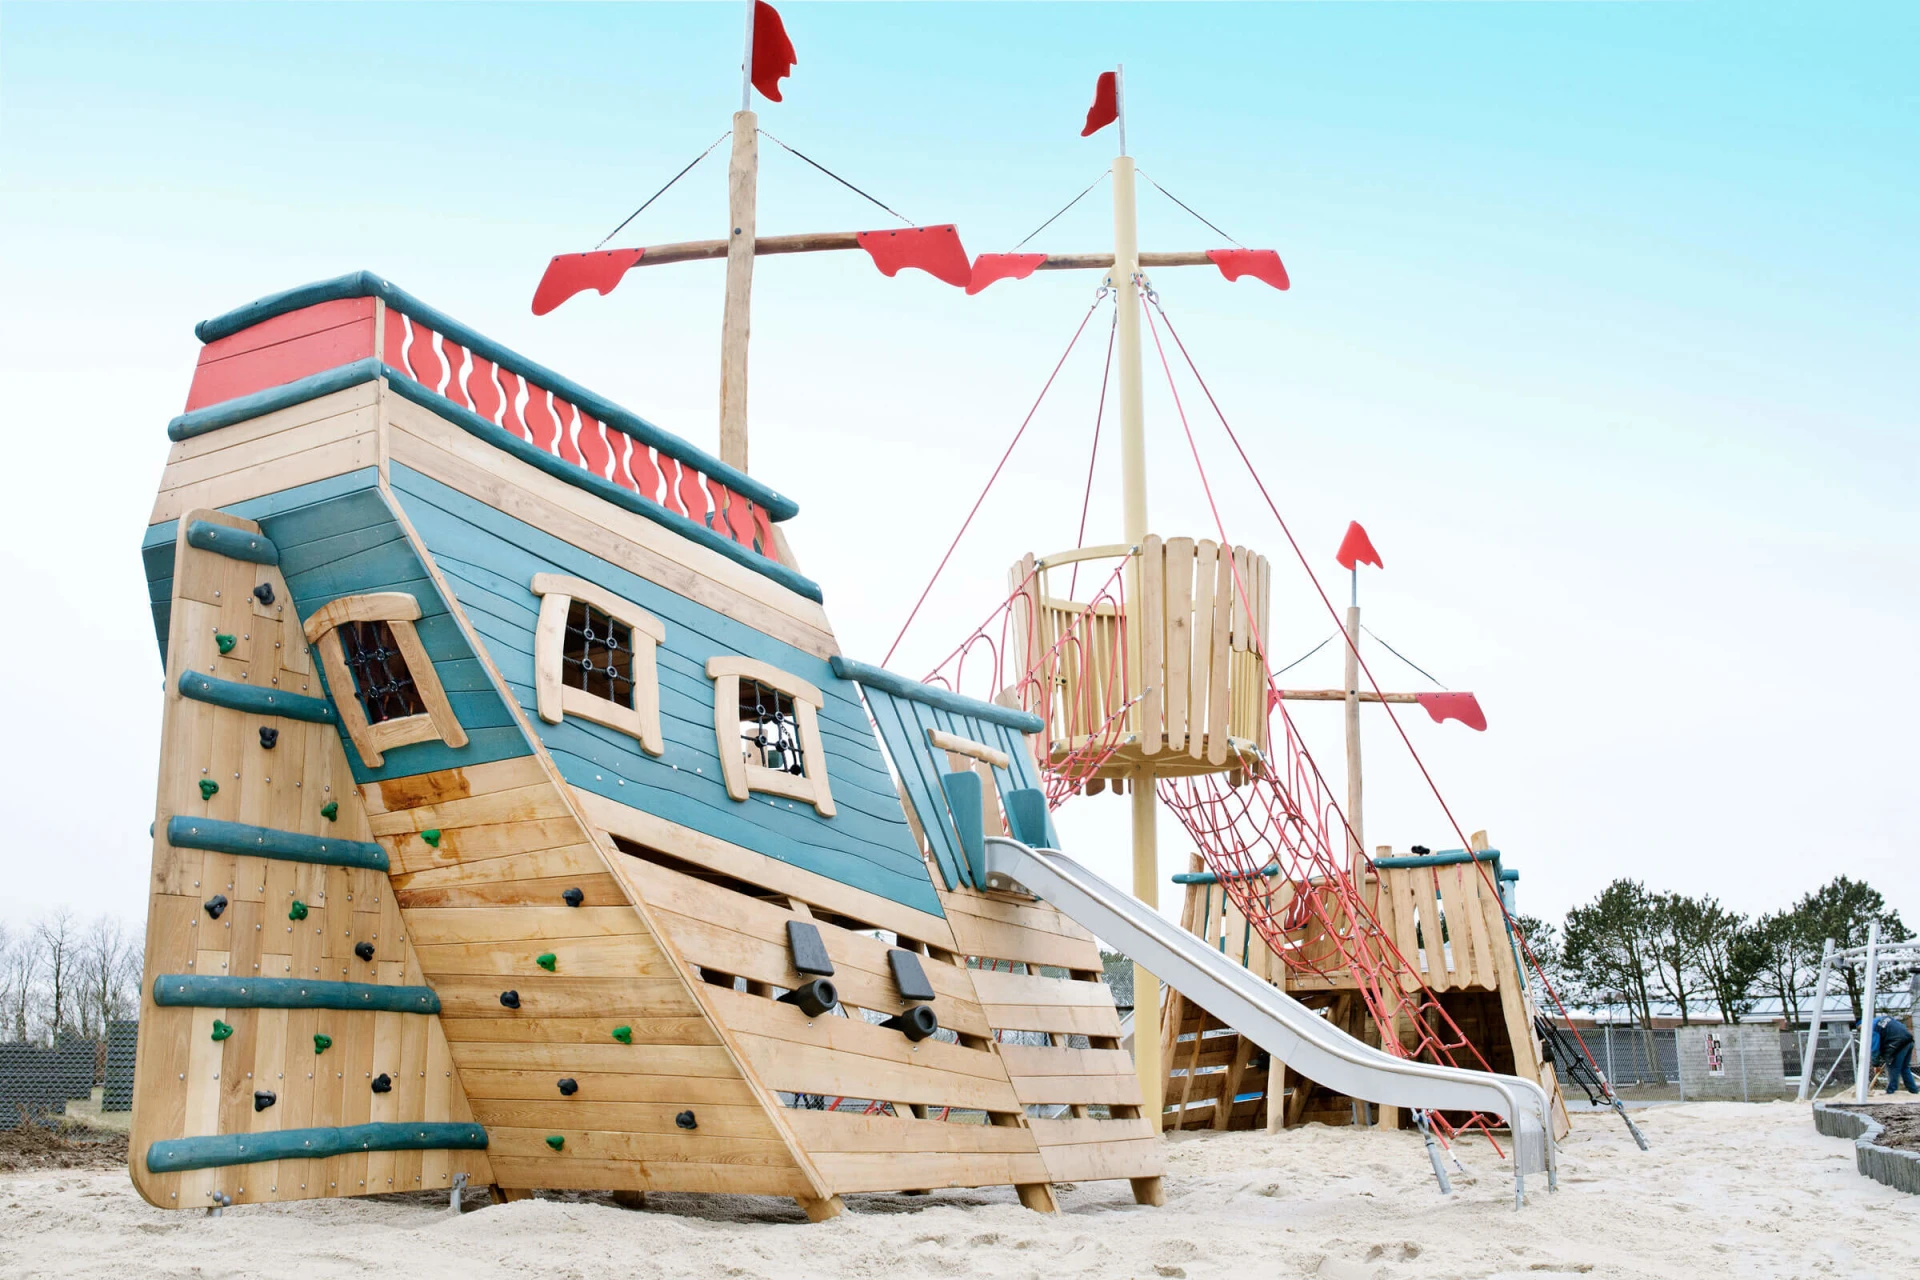 Den store robinia skibskonstruktur hvorpå børn og voksne leger.